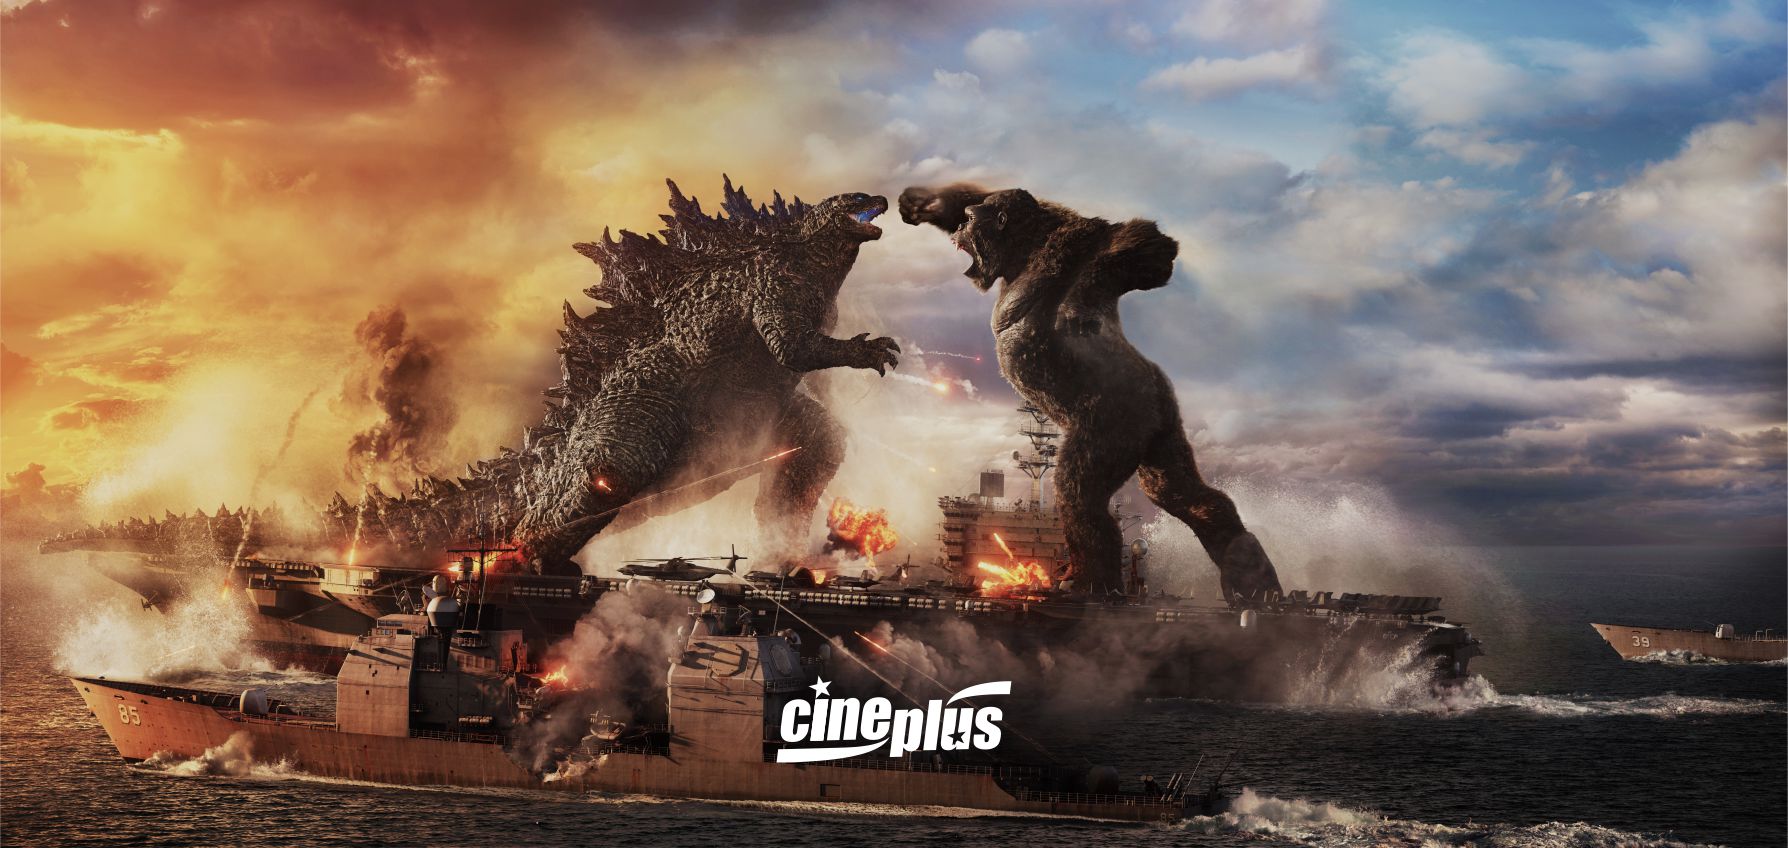 Ingressos disponíveis Godzilla Vs Kong estreia quinta-feira no Cineplus